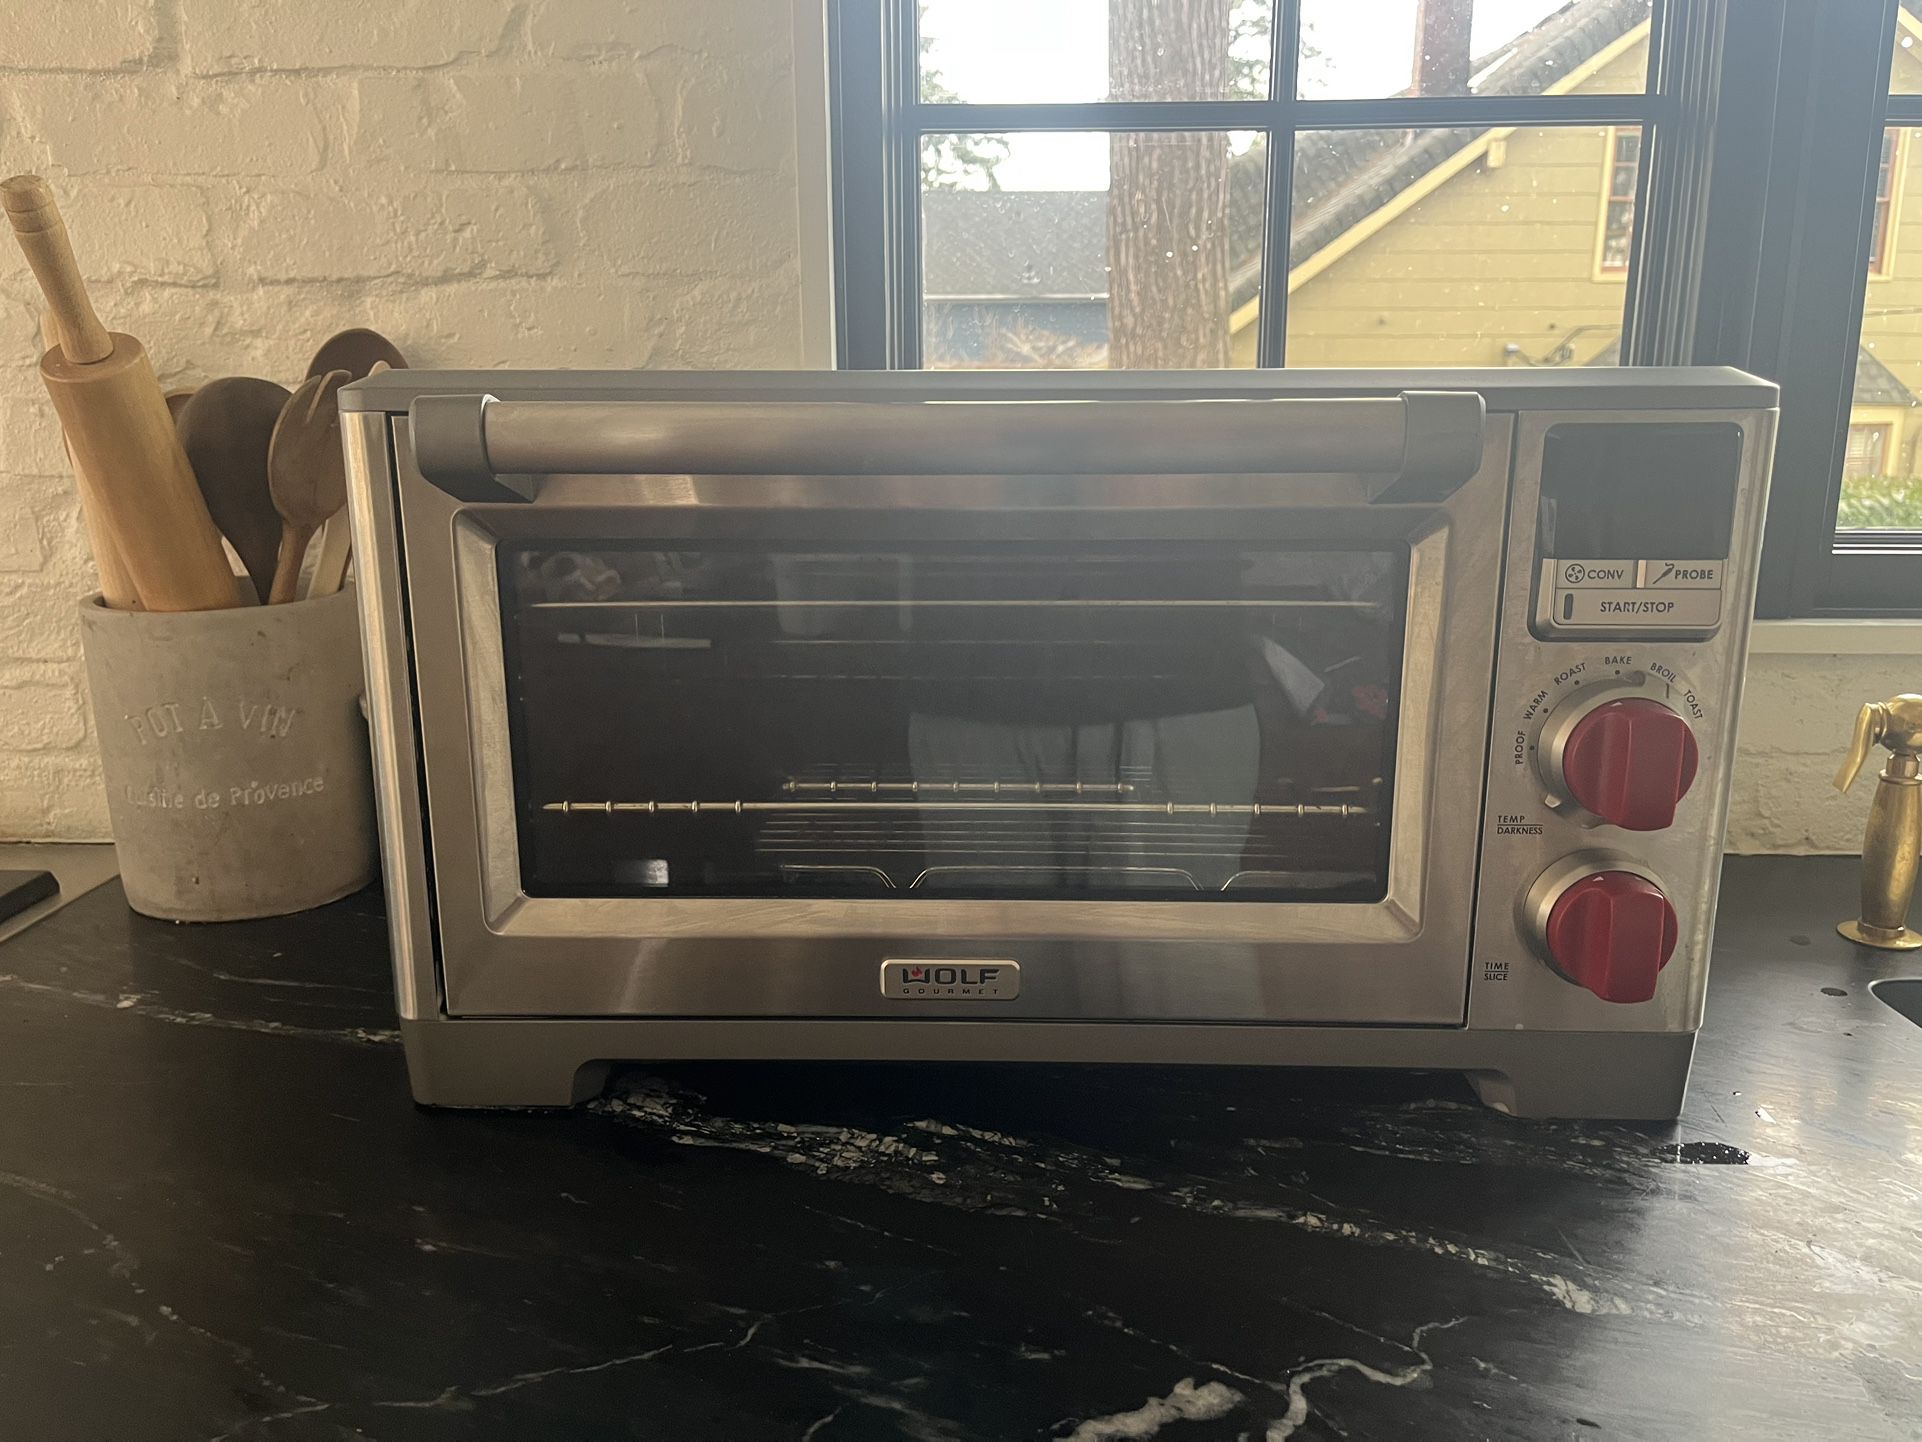 Wolf Gourmet Countertop Oven